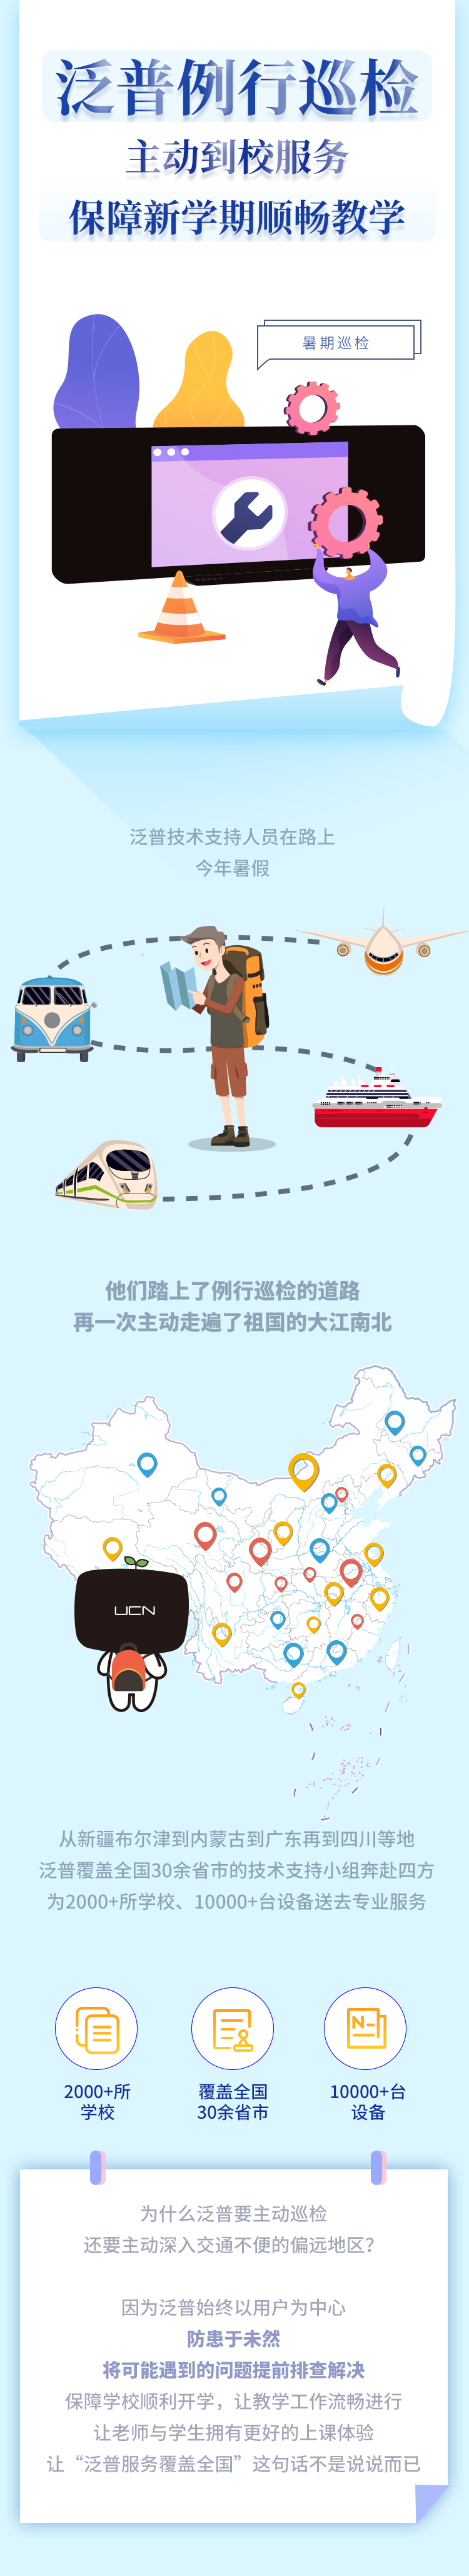 酷游ku游官网最新地址
例行巡检，主动到校服务，保障新学期顺畅教学(图1)